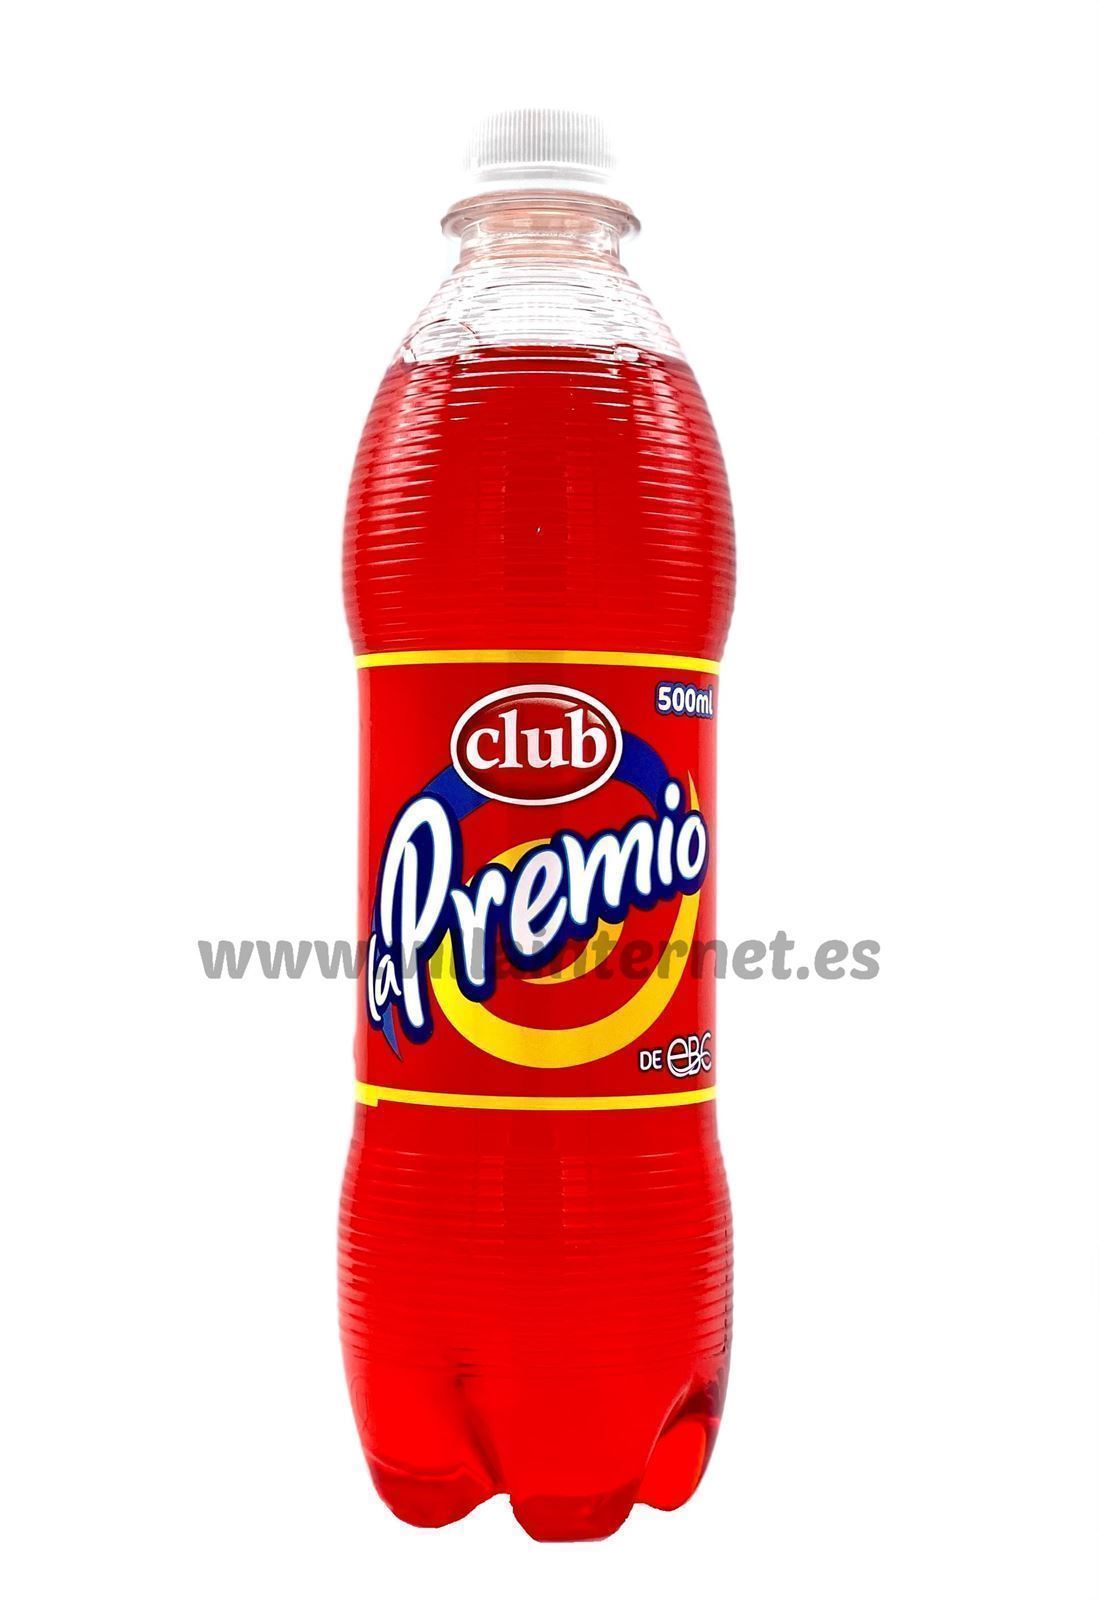 Club La Premio sabor cola 500ml - Imagen 1